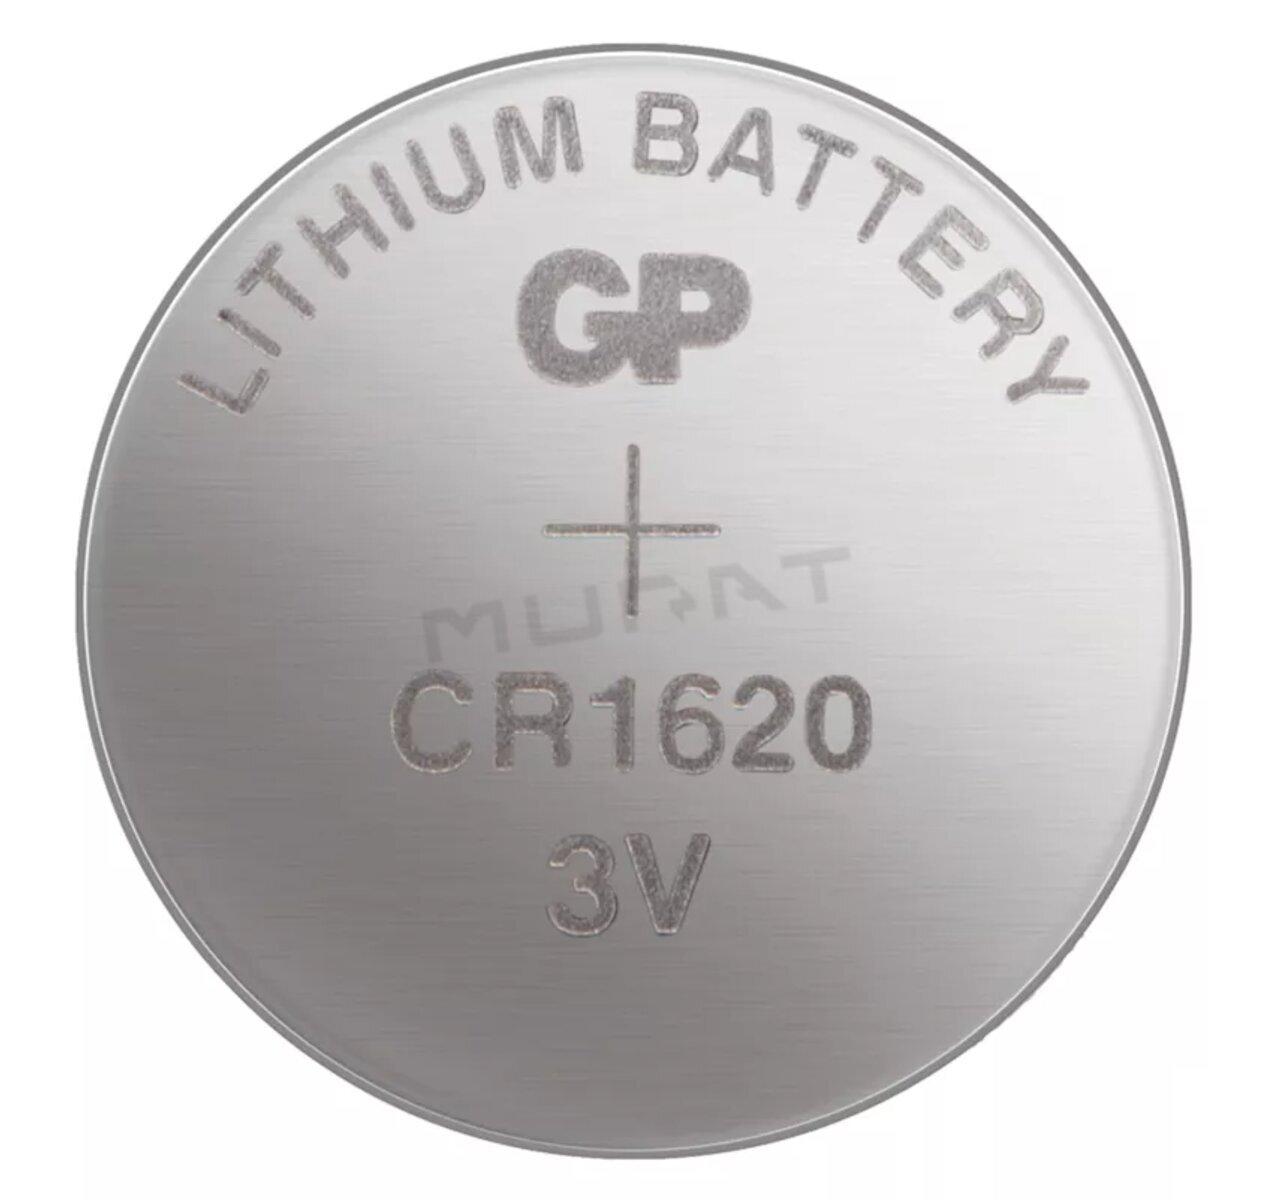 Batéria CR 1620 3V/75mAh GP B1570